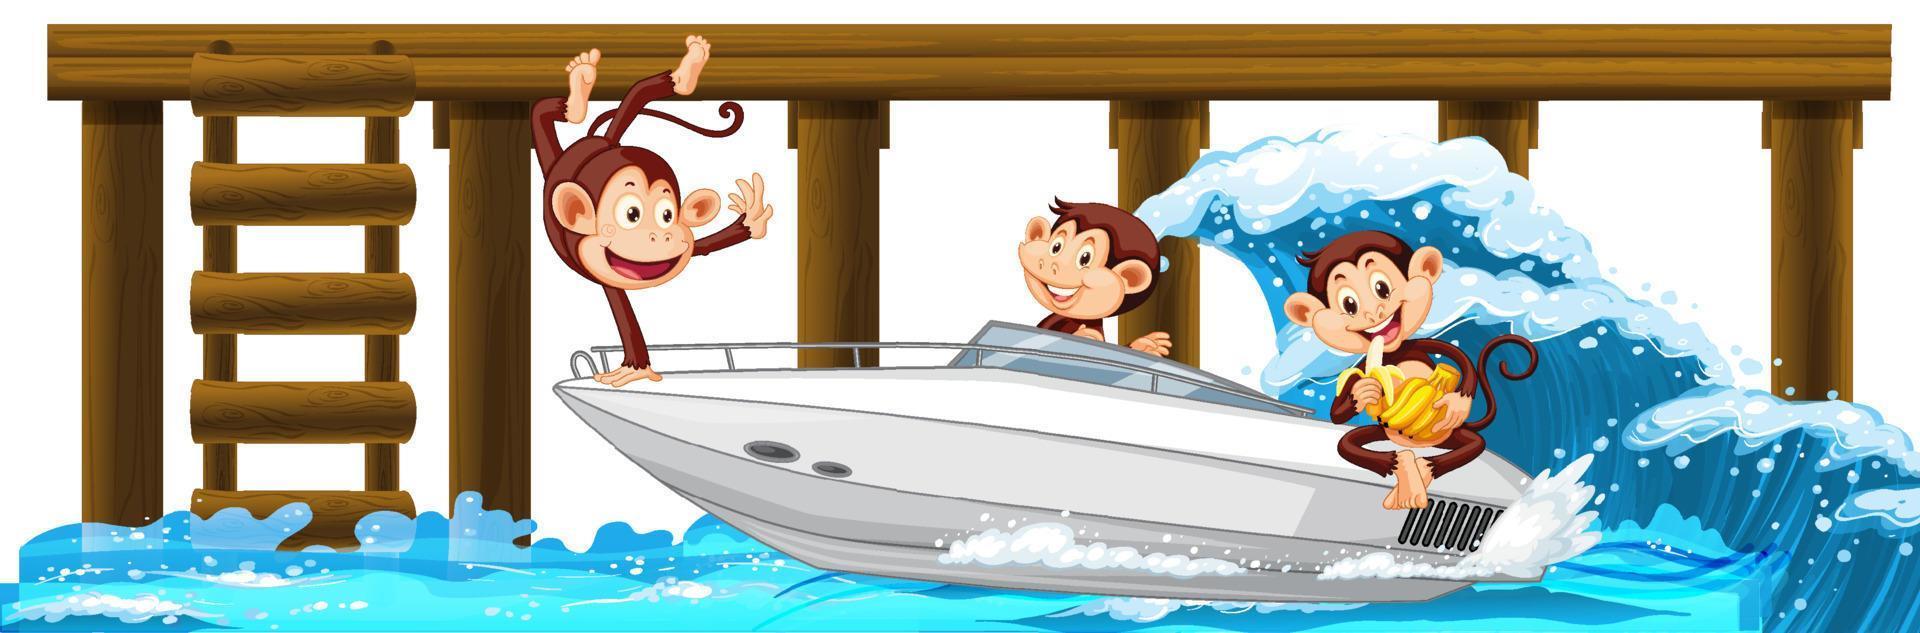 houten pier met veel apen op speedboot vector